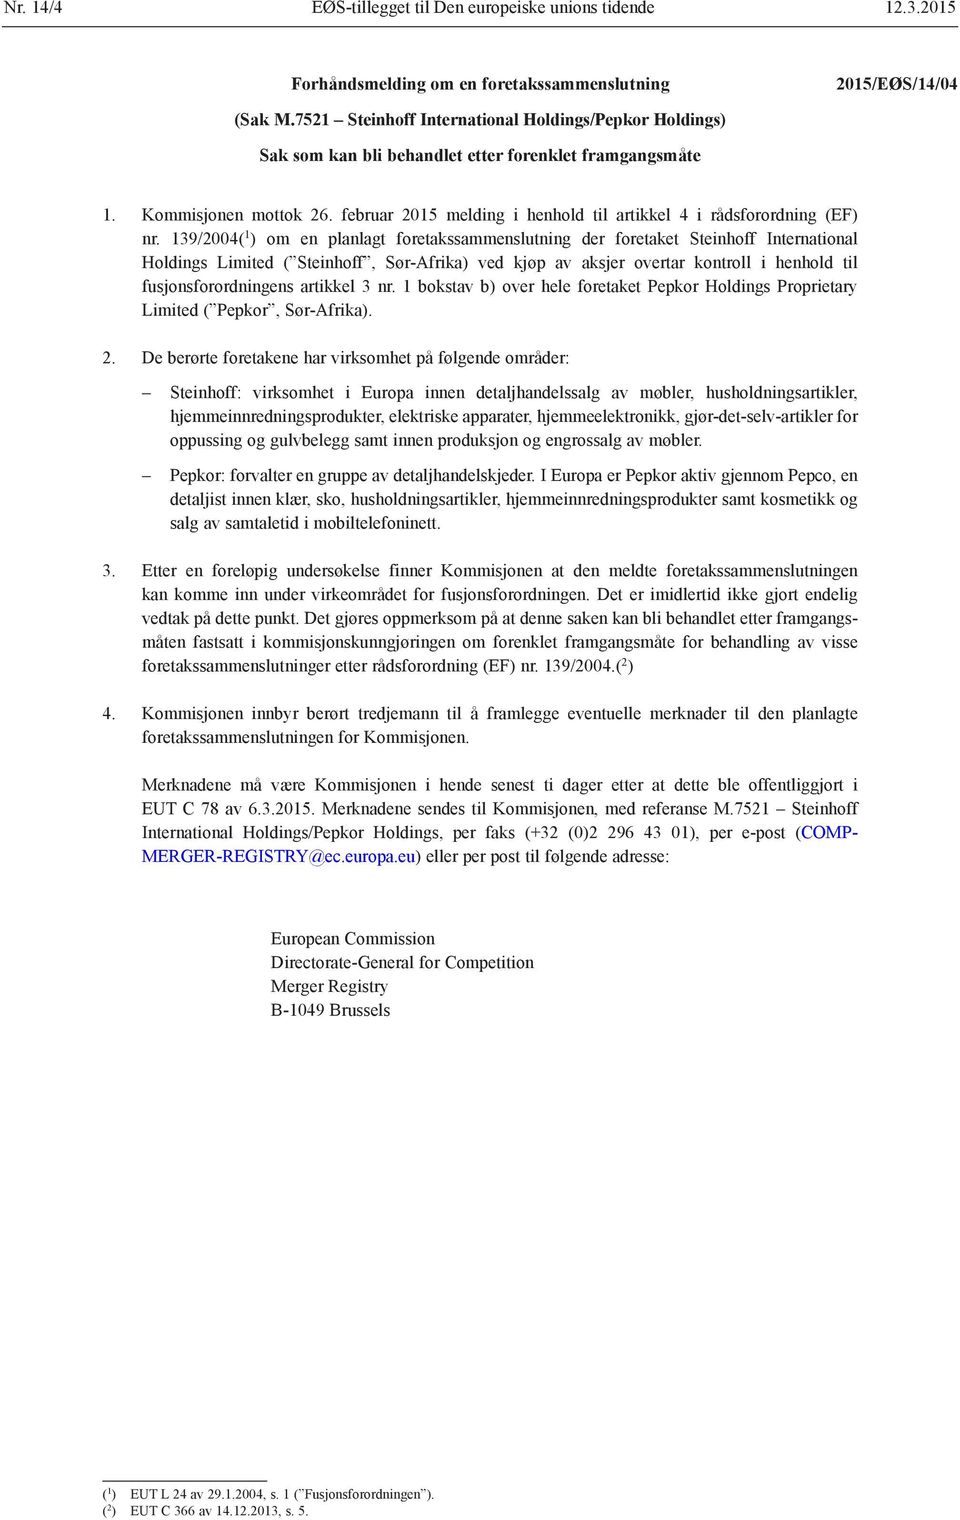 februar 2015 melding i henhold til artikkel 4 i rådsforordning (EF) nr.